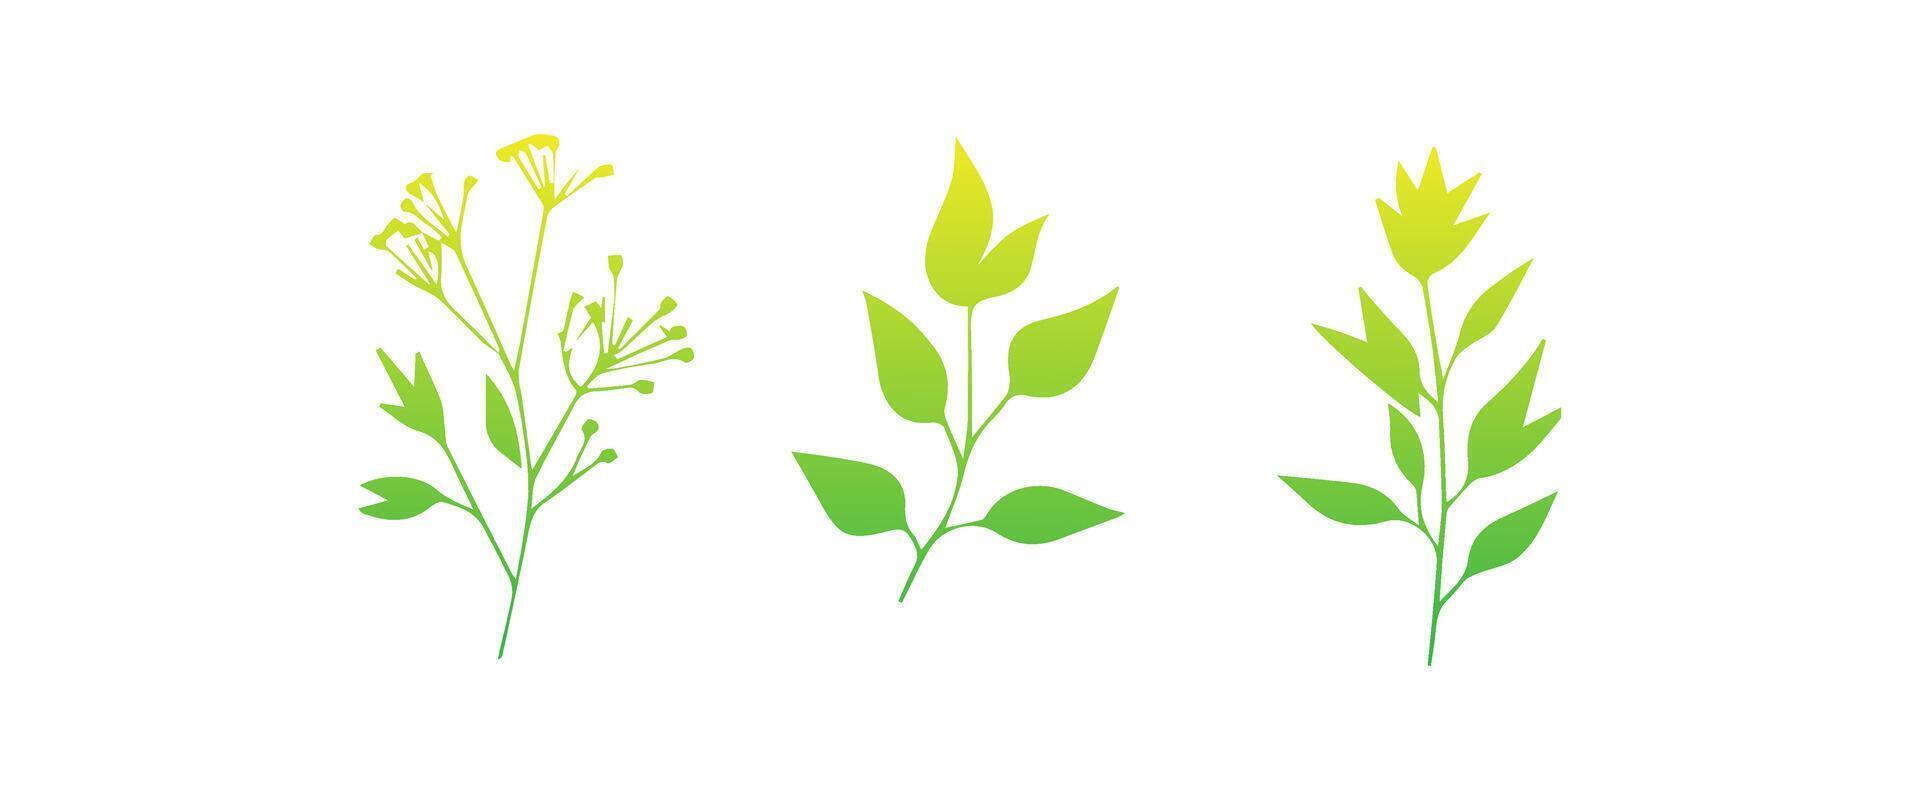 mínimo femenino botánico floral rama en silueta estilo. mano dibujado Boda hierba, minimalista flores con elegante hojas. botánico rústico de moda verdor vector